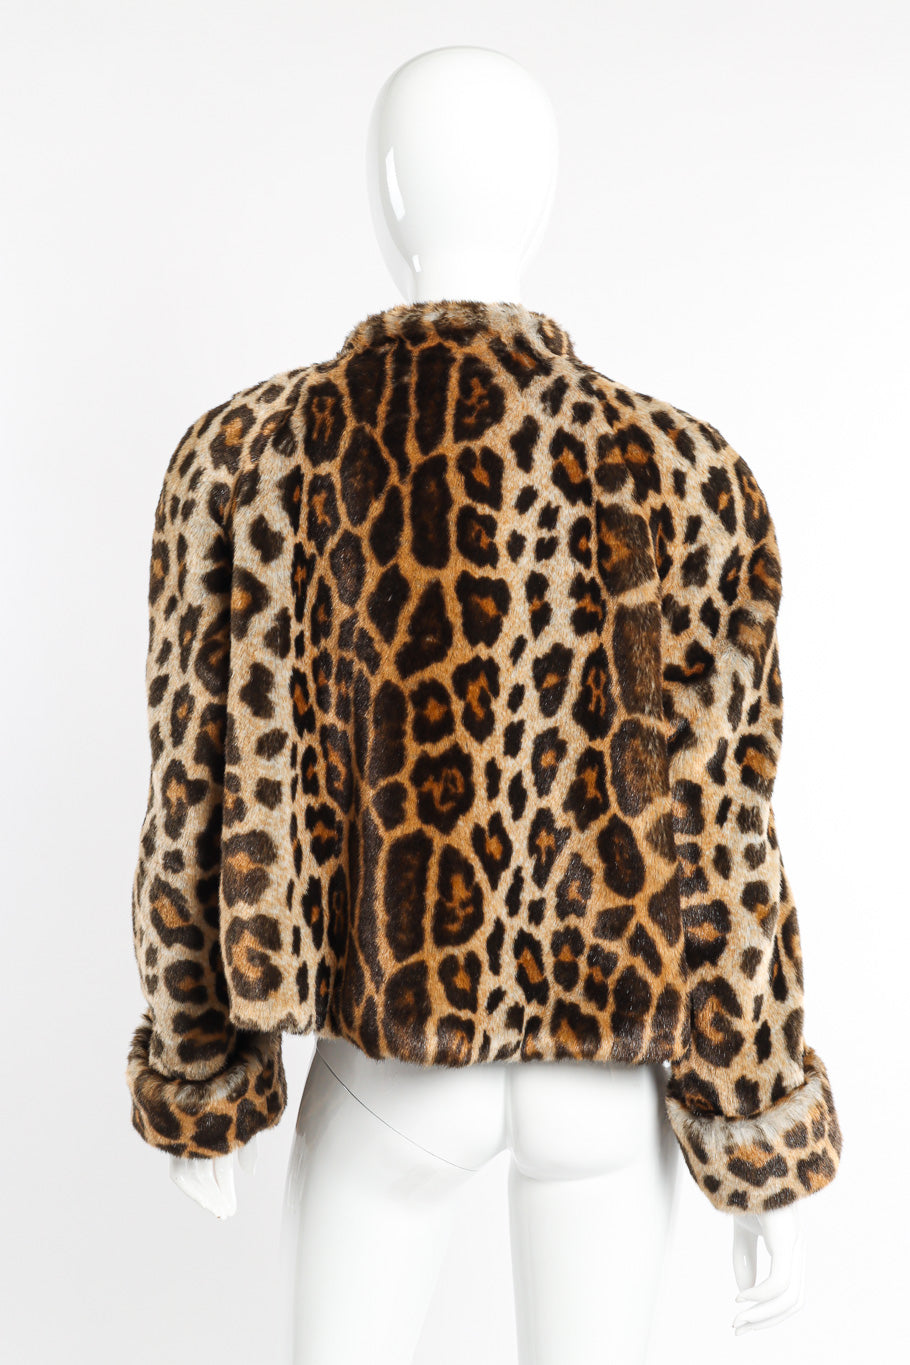 Vintage Mondi Leopard Print Faux Fur Jacket back view on mannequin @recessla